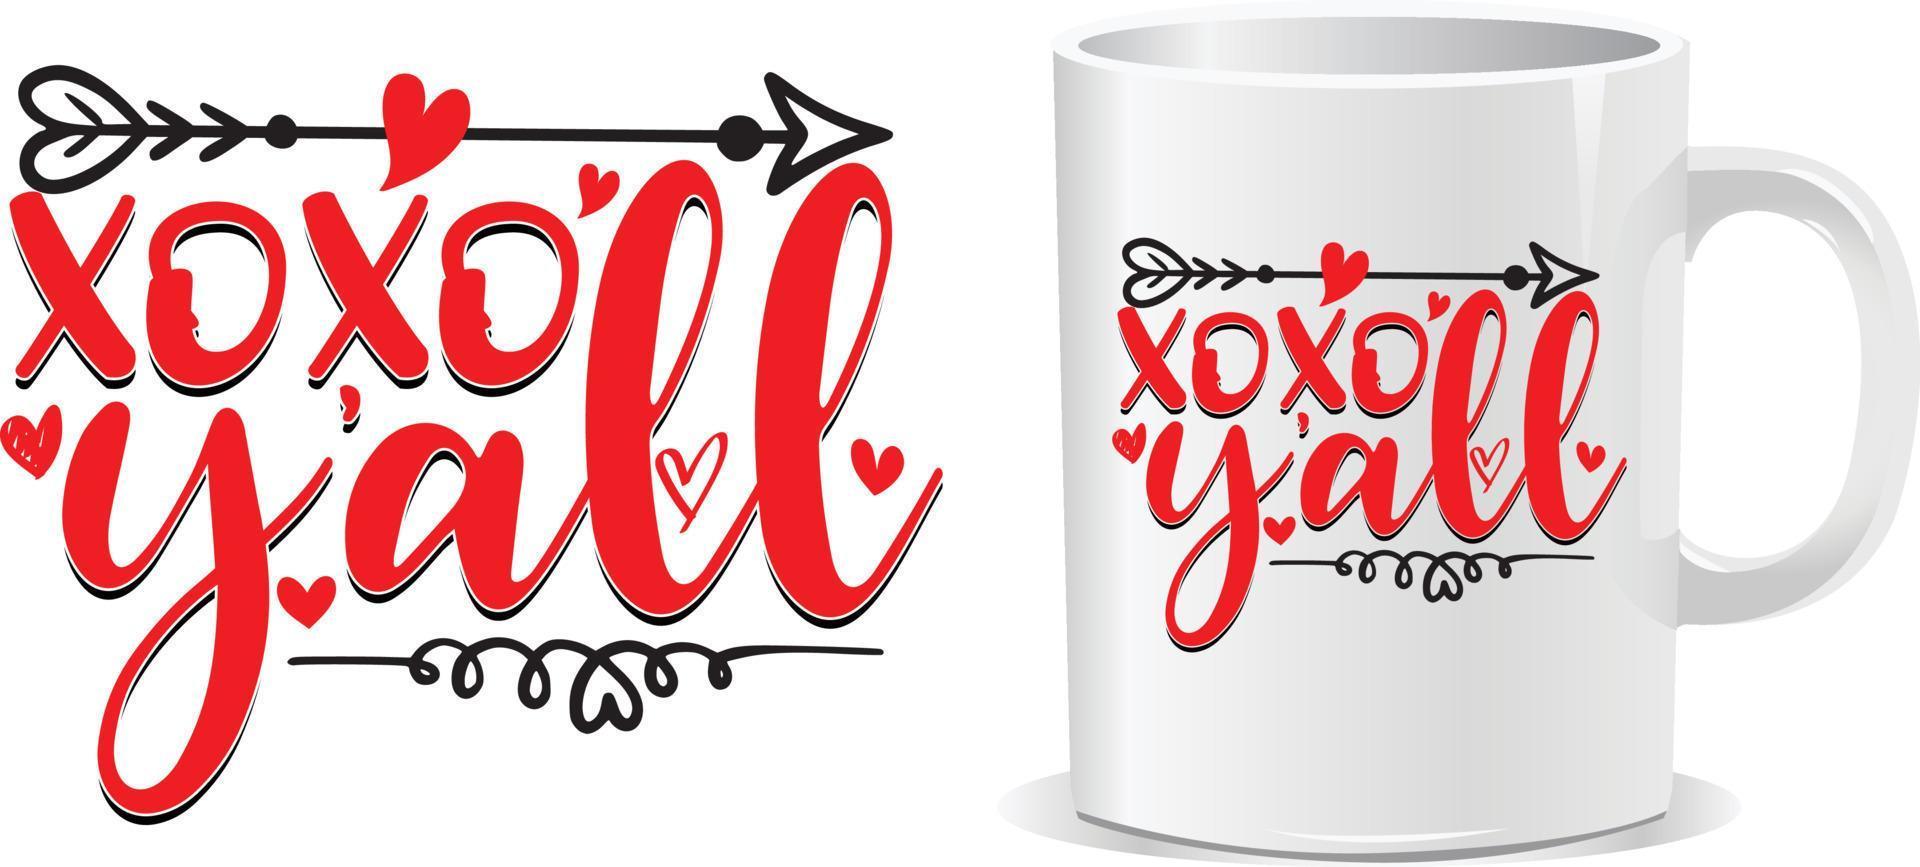 XOXO y'all Happy valentine's day quotes mug design vector